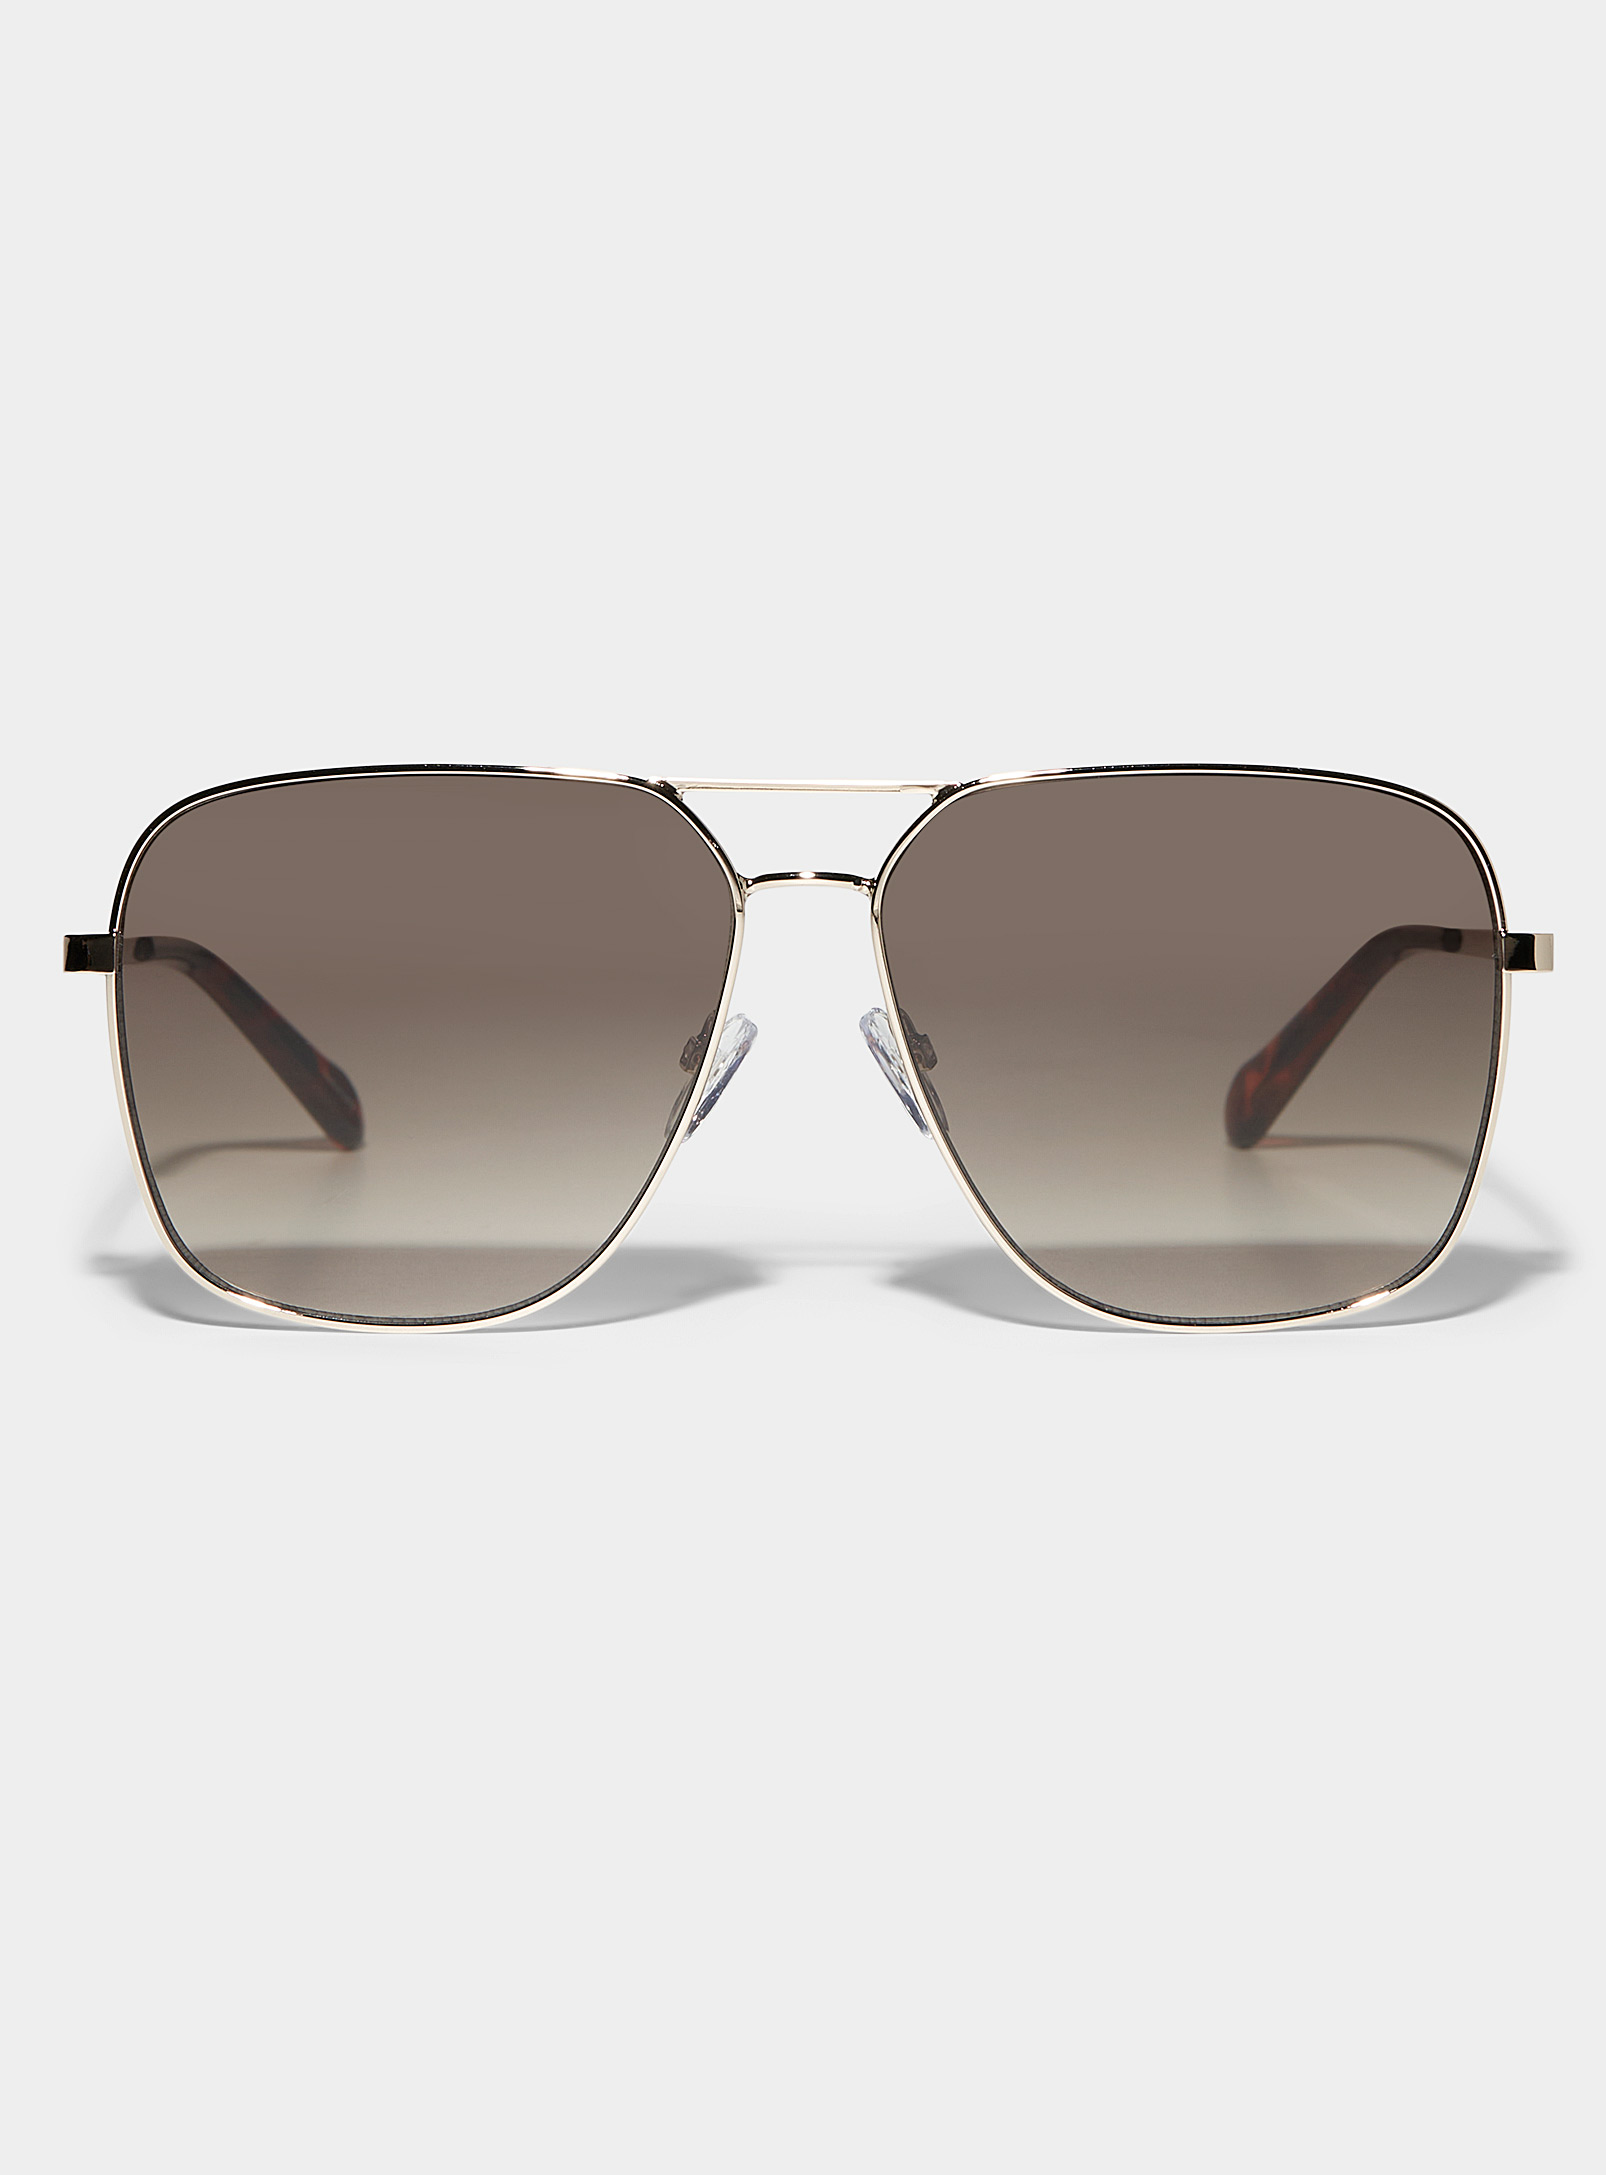 Fossil - Les lunettes de soleil aviateur minimalistes dorées